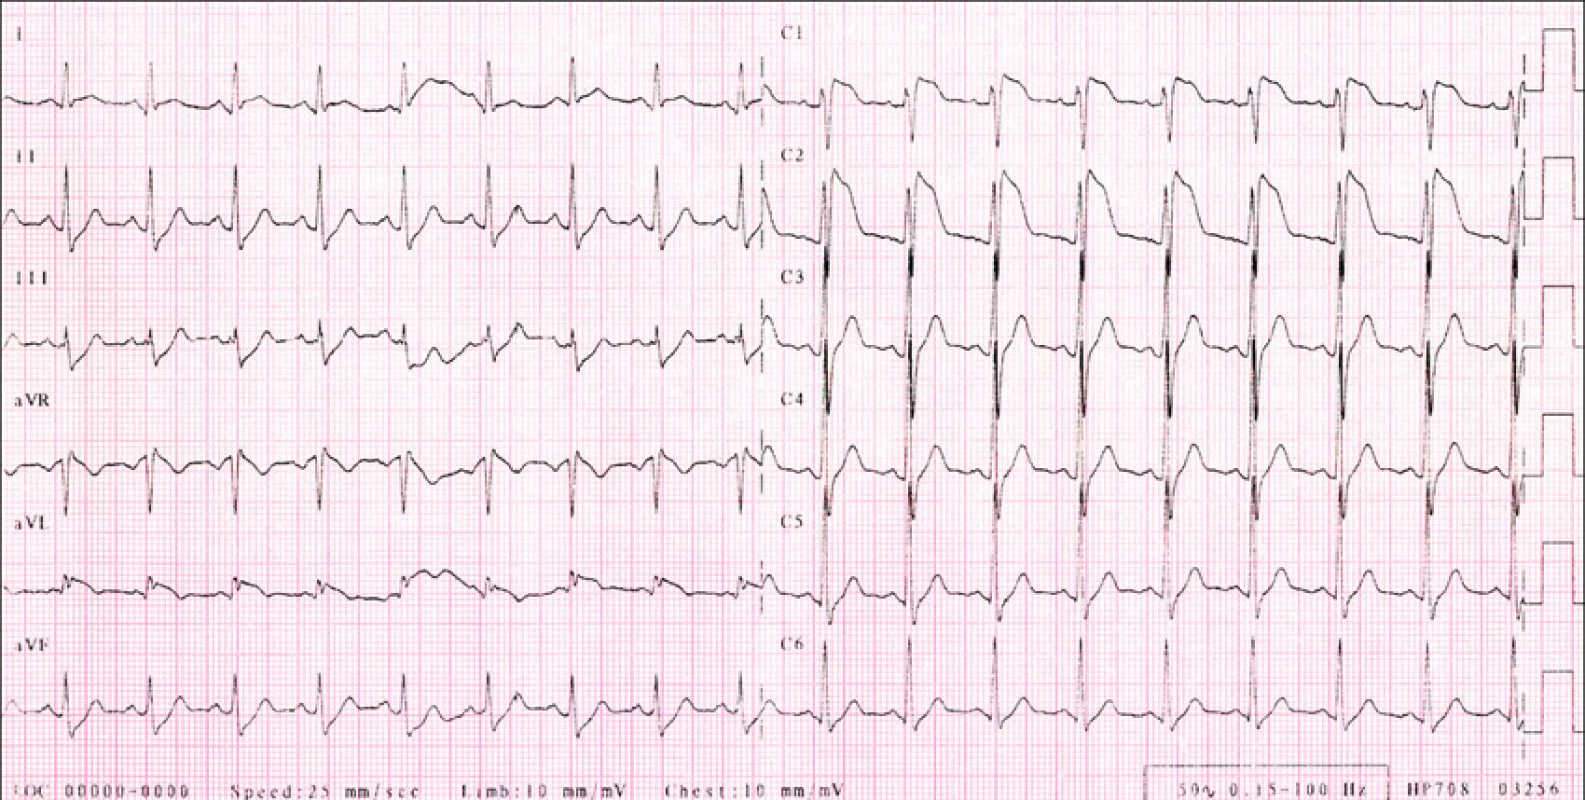 RK, 29 let, Brugada syndrom.
EKG s vysoko odstupujícími konkávními elevacemi ST segmentu (J vlna) ve V1,2.